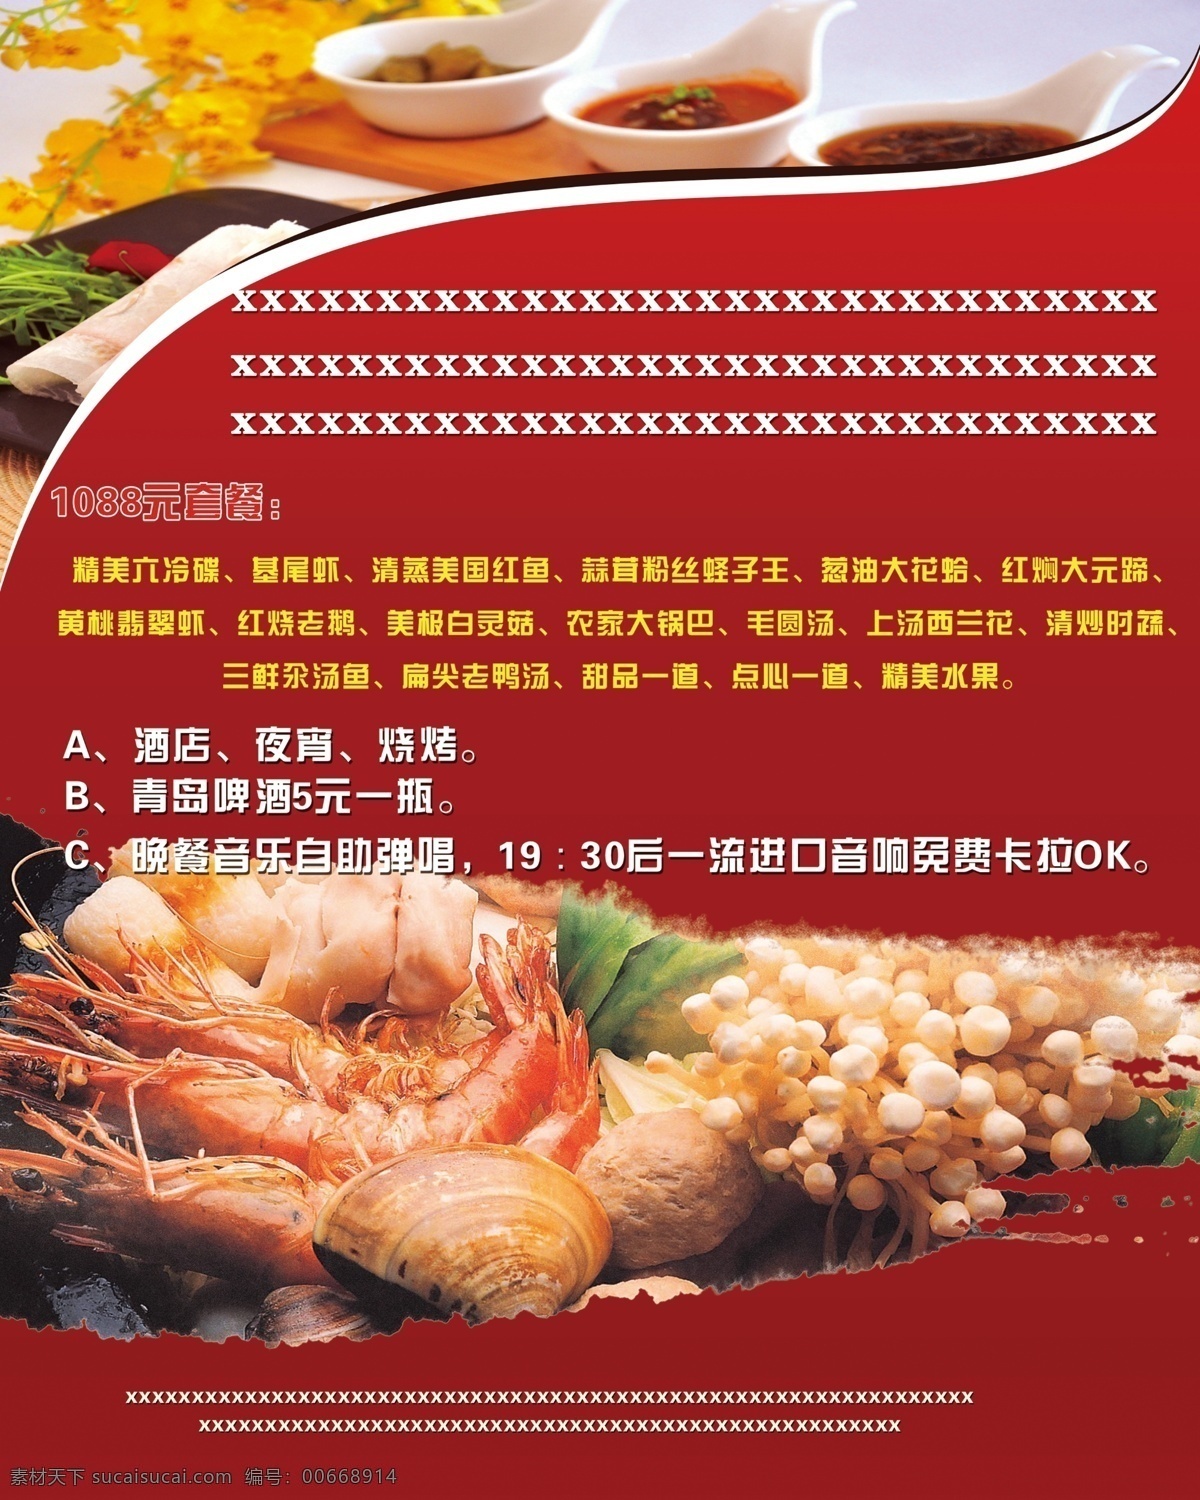 海鲜单页 海鲜海报 龙虾 海鲜 单页 菜单菜谱